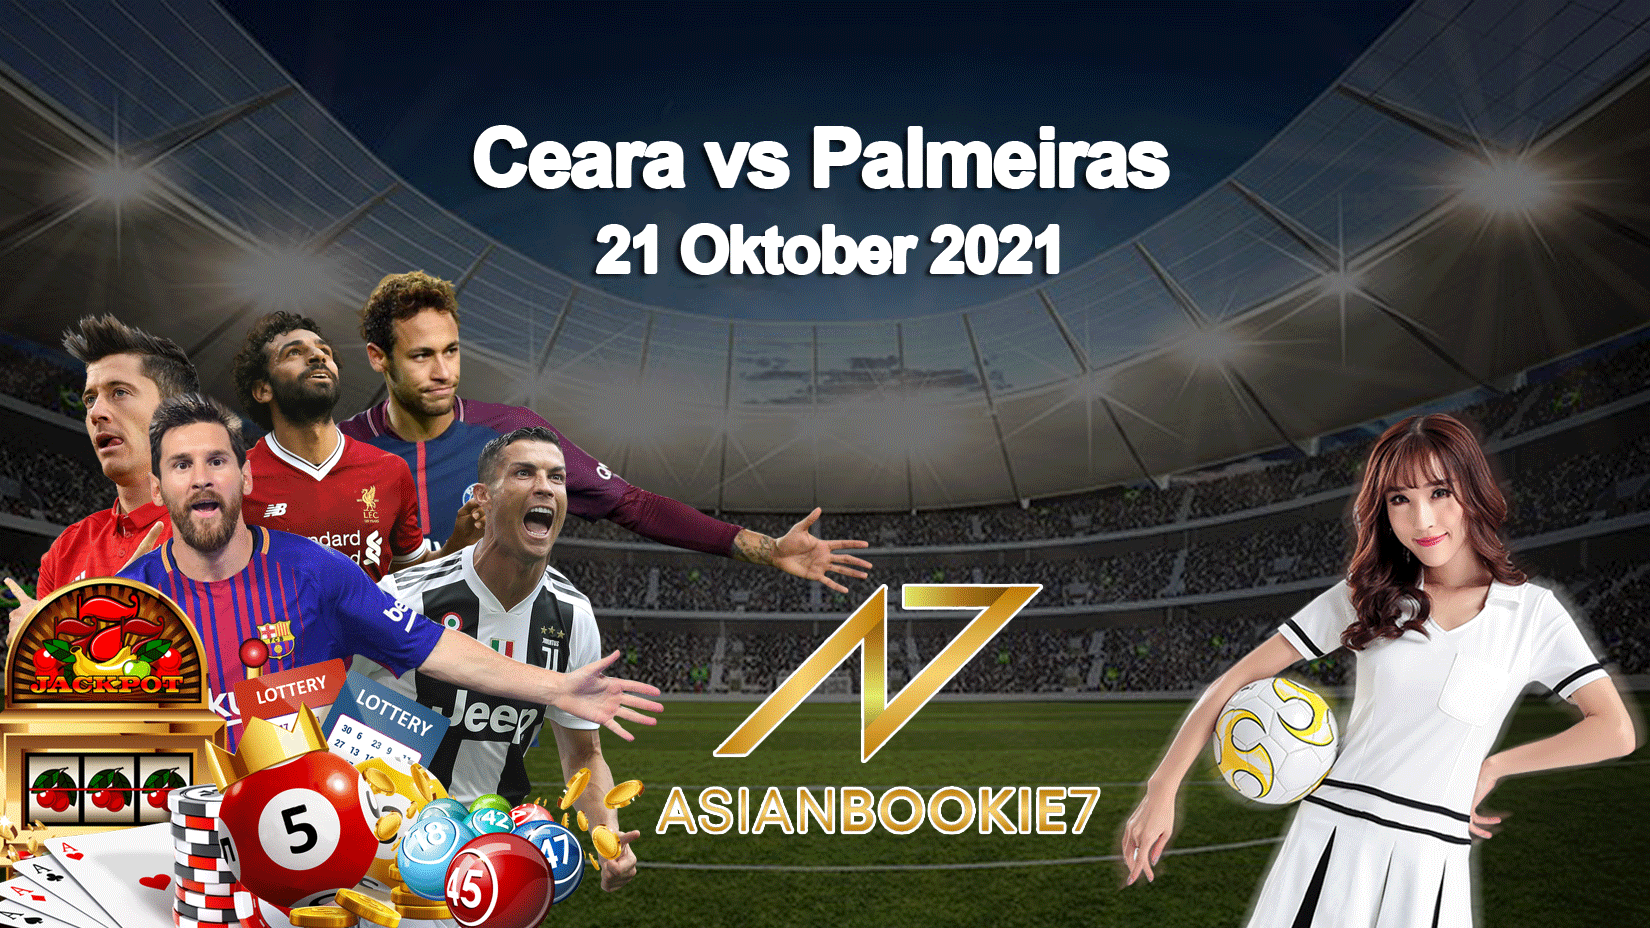 Prediksi Ceara vs Palmeiras 21 Oktober 2021